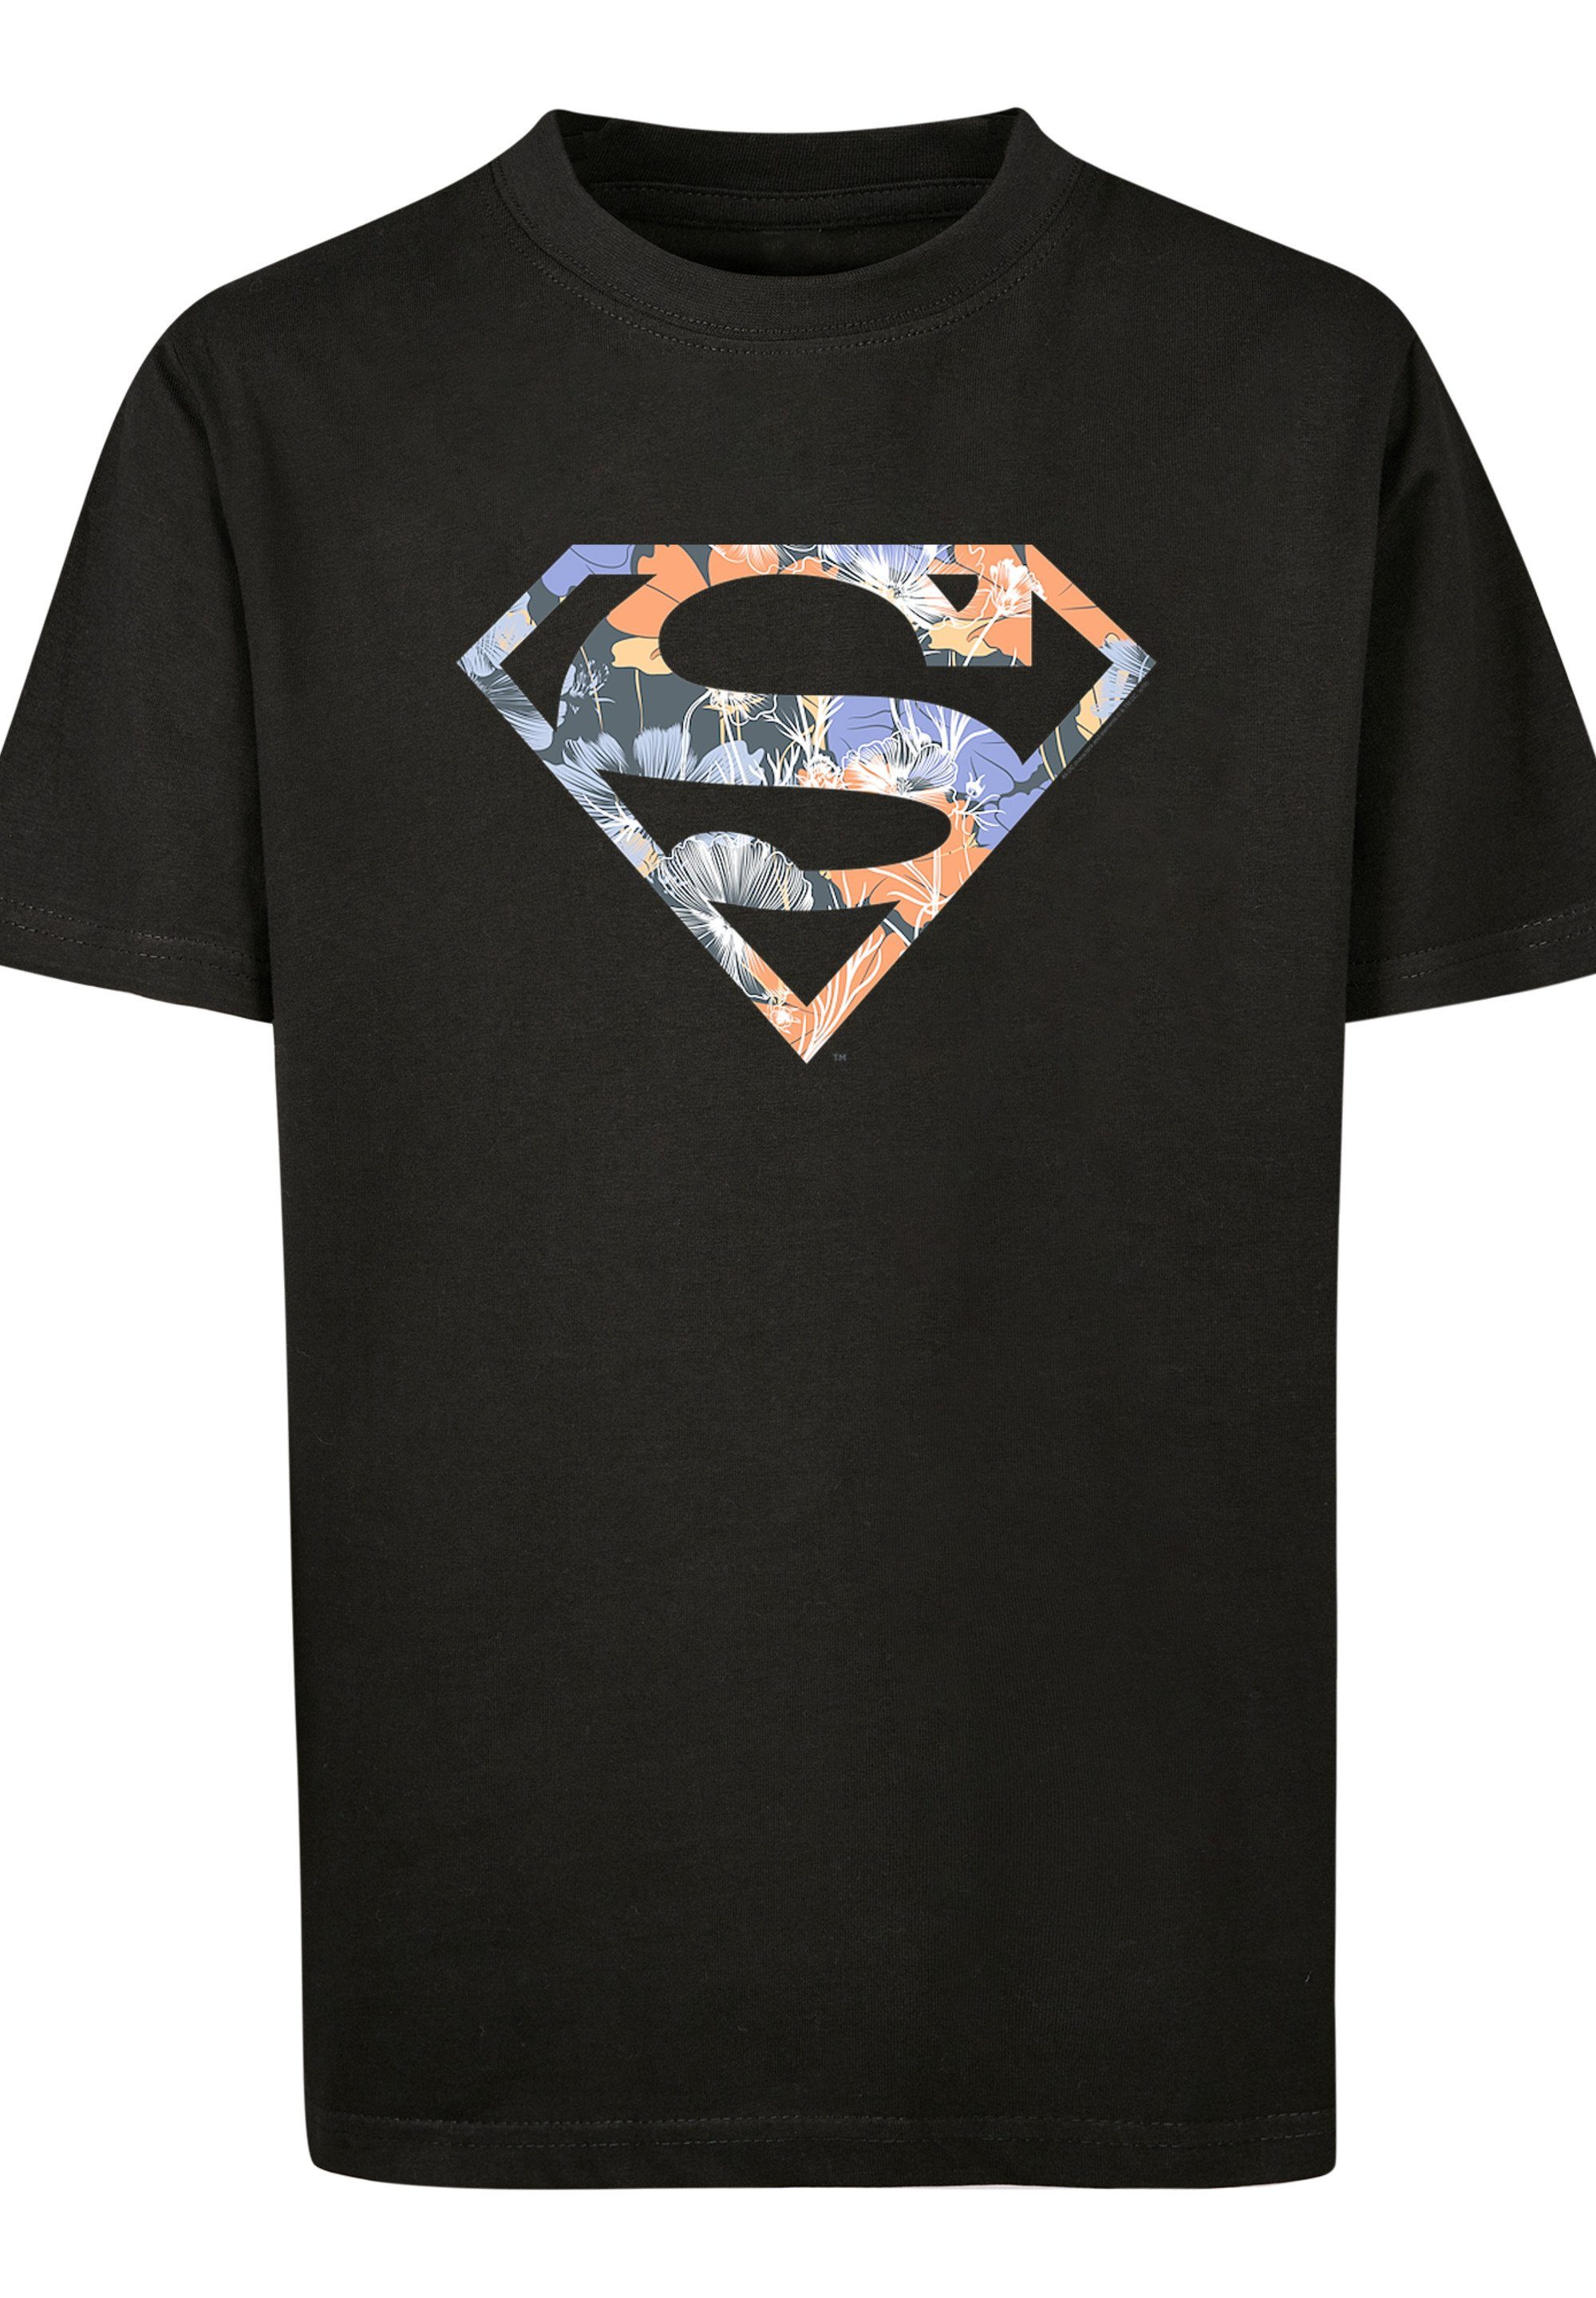 schwarz Superman T-Shirt Comics Kinder,Premium Unisex T-Shirt Floral Logo Superheld Merch,Jungen,Mädchen,Bedruckt DC F4NT4STIC